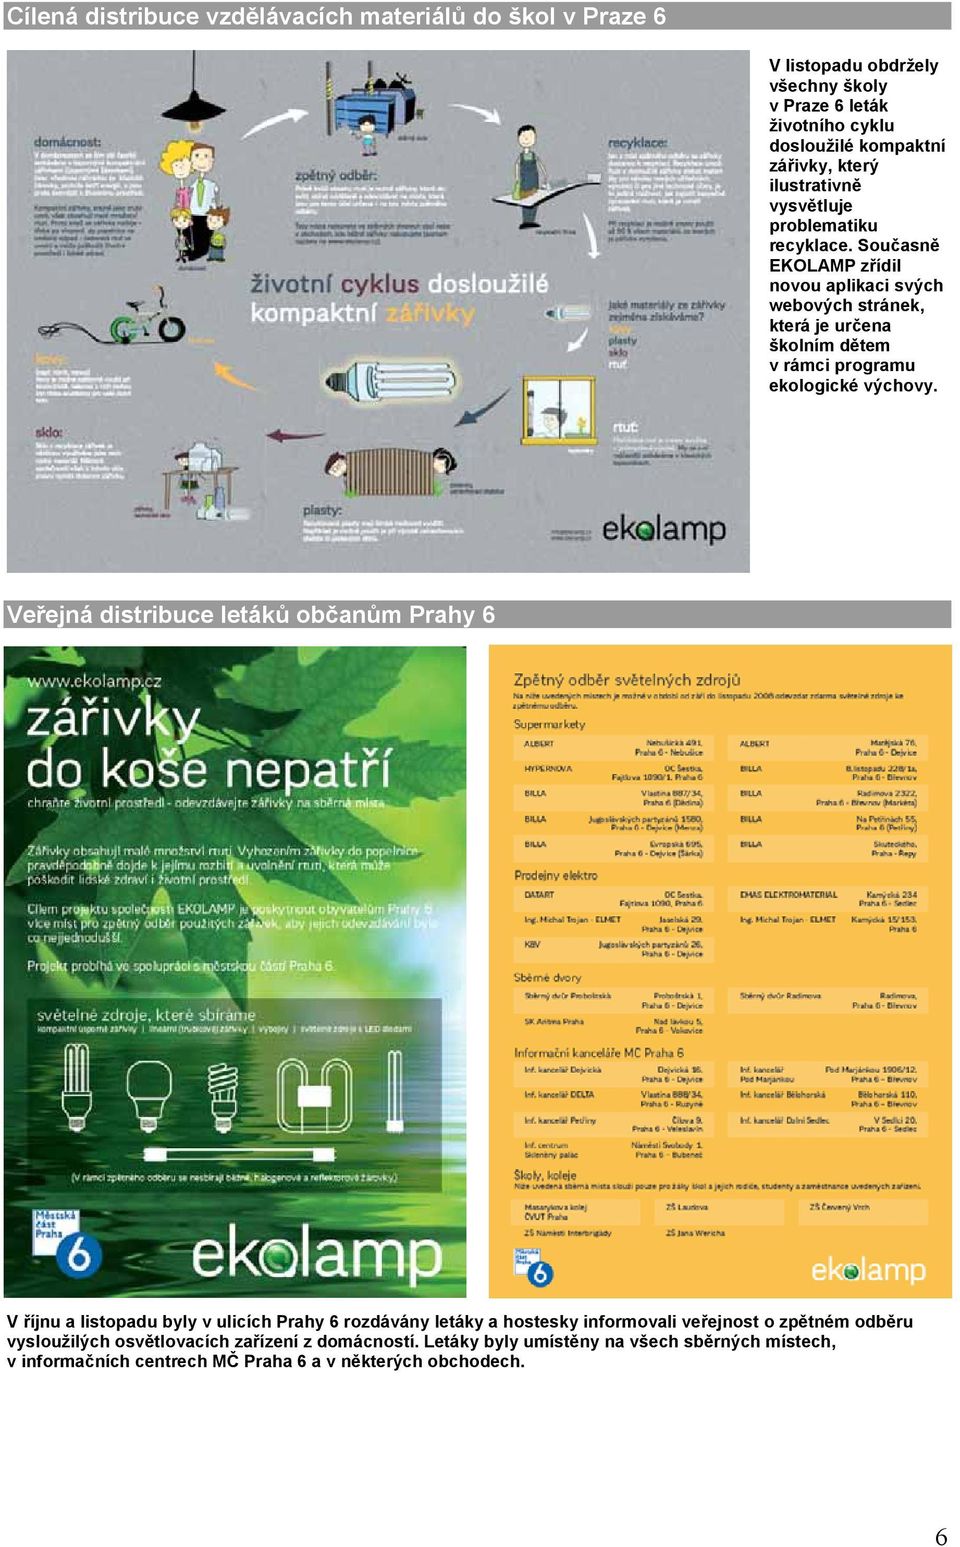 Současně EKOLAMP zřídil novou aplikaci svých webových stránek, která je určena školním dětem v rámci programu ekologické výchovy.